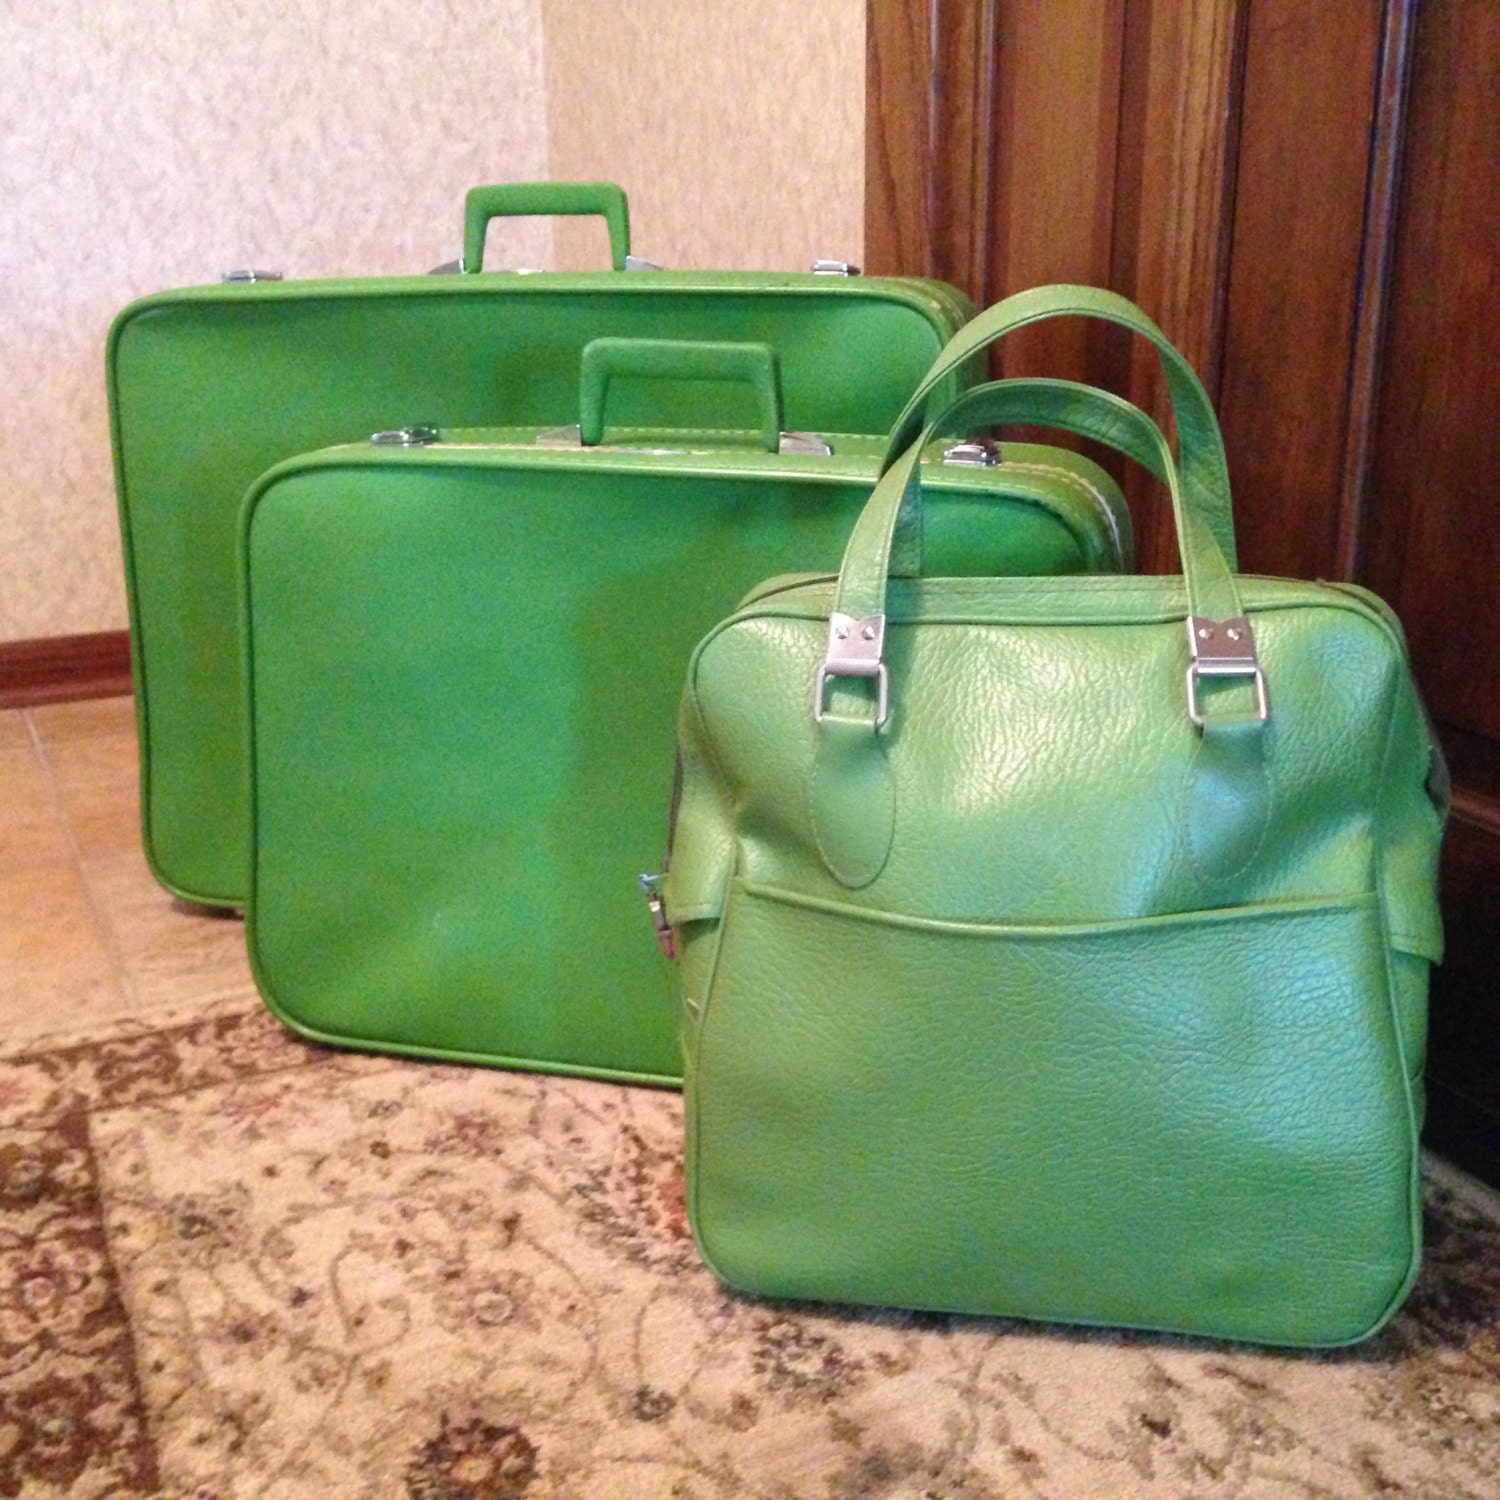 SALE Vintage Sears Featherlite green luggage set of three